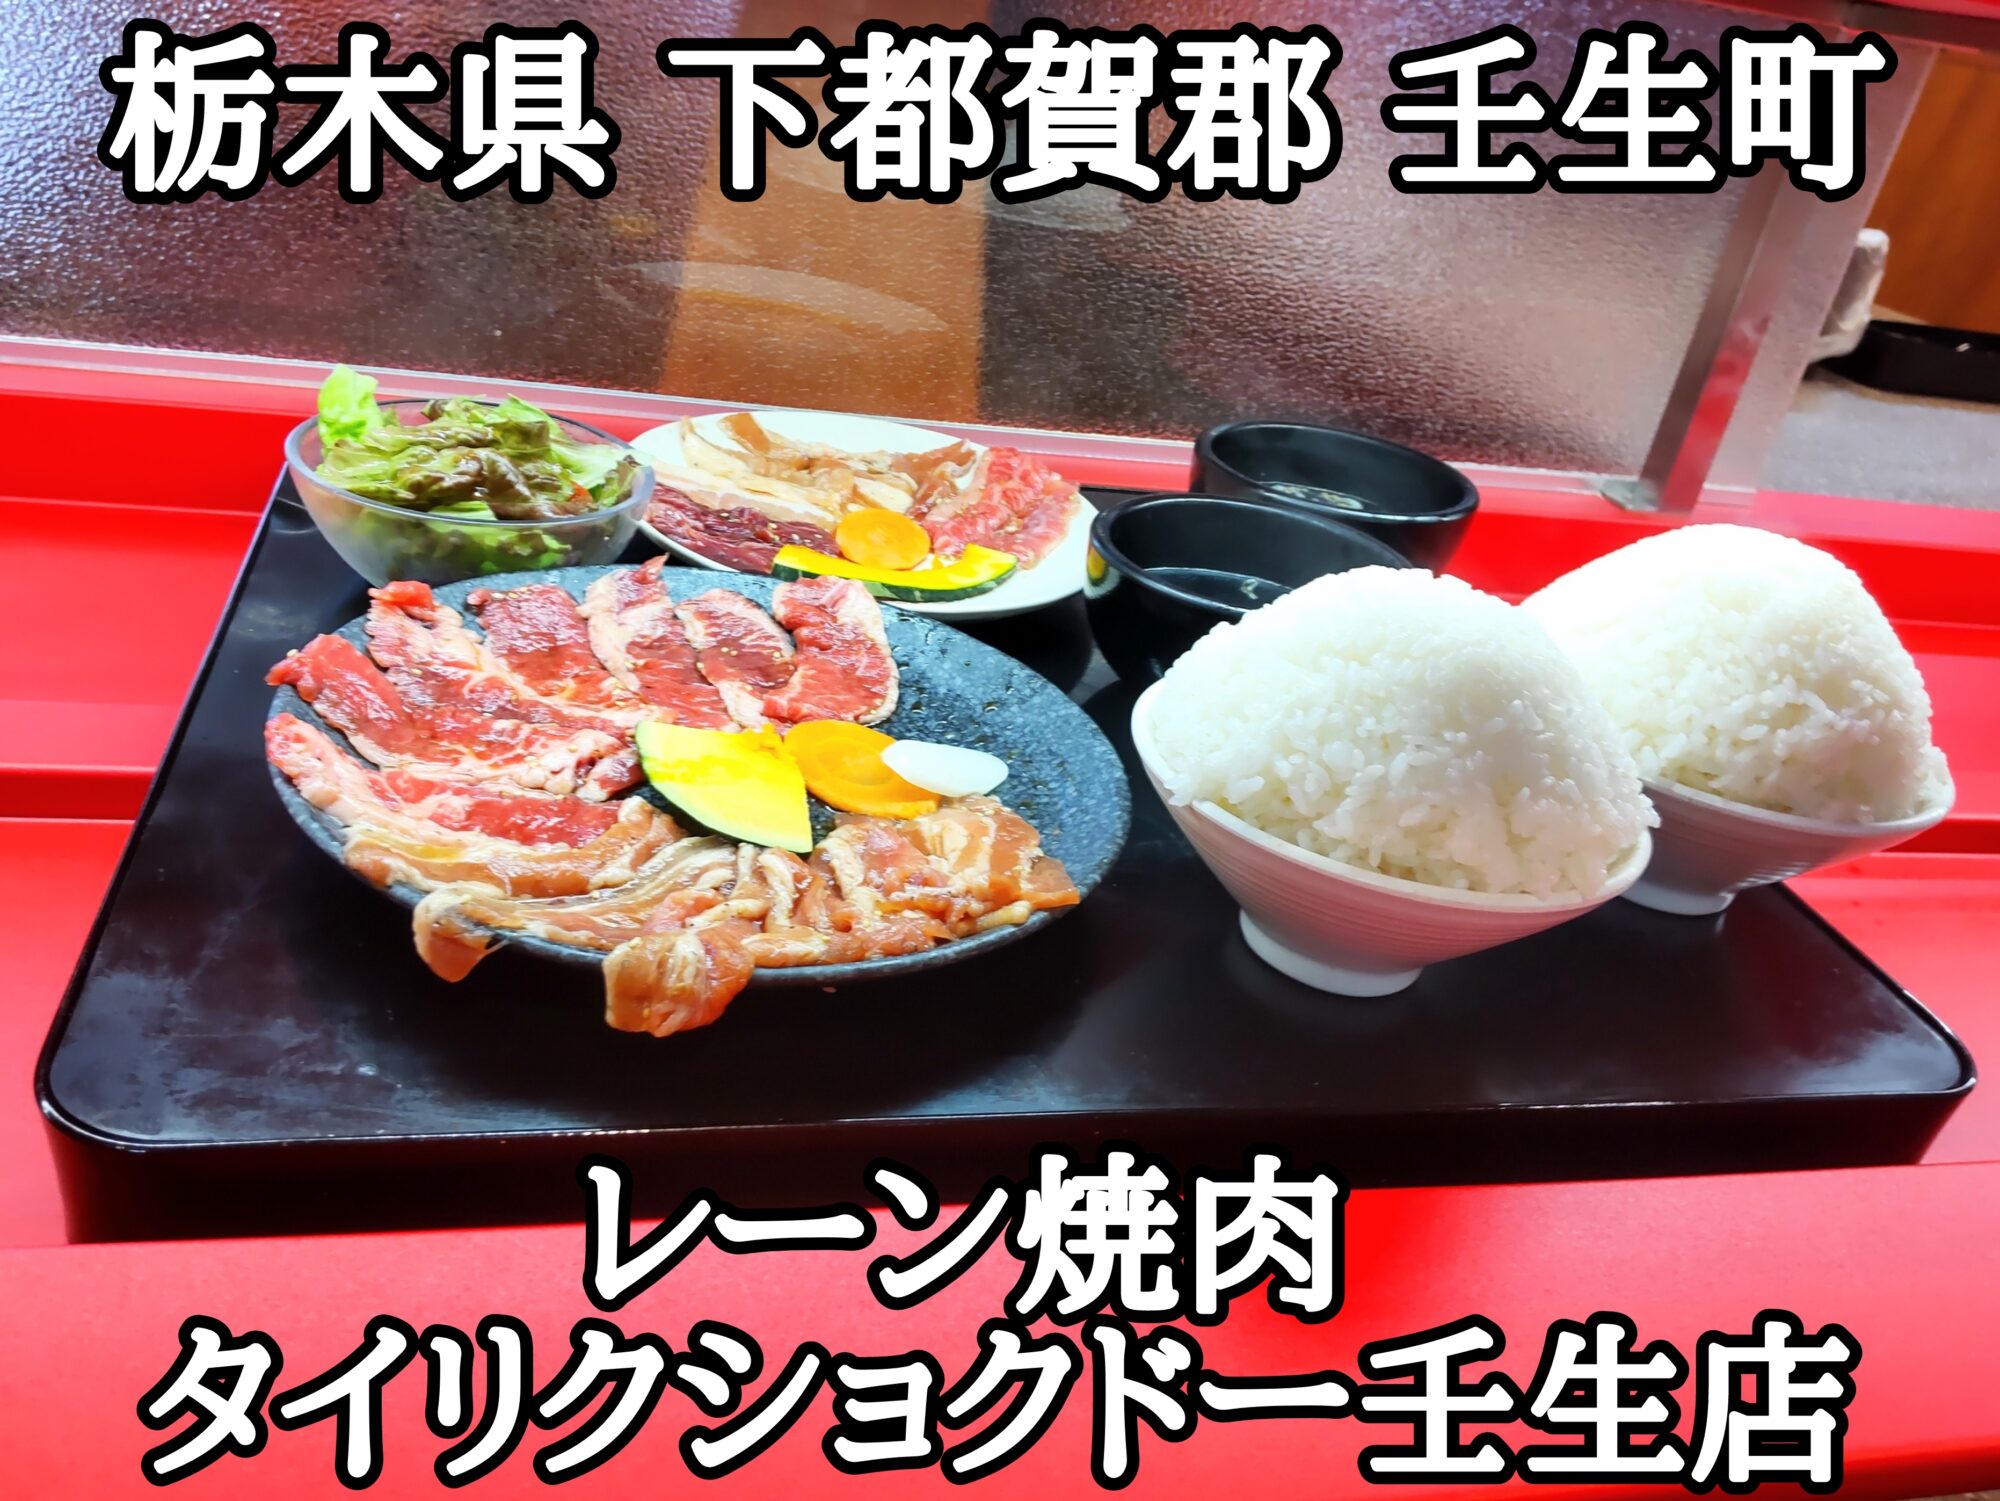 【栃木県】【下都賀郡壬生町】「レーン焼肉 タイリクショクドー壬生店」お得な焼肉ランチが食べられる栃木県初焼肉レーン店でアプリを駆使して更にお得なランチになりました